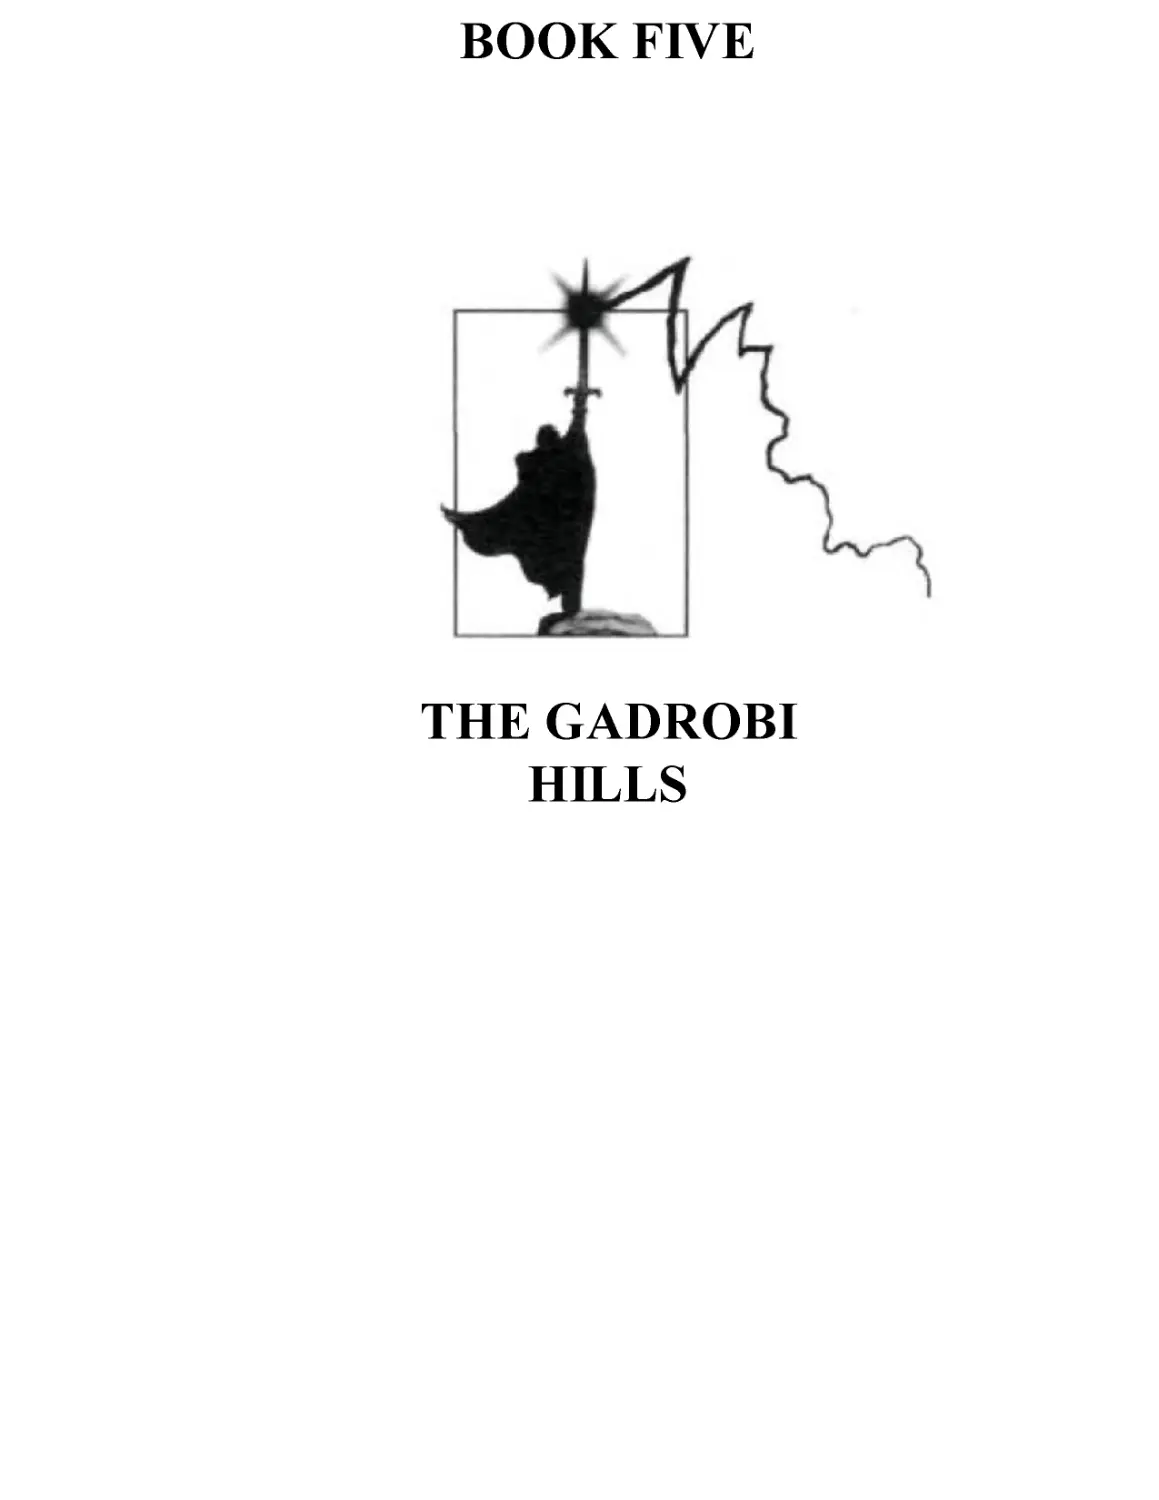 BOOK FIVE: THE GADROBI HILLS